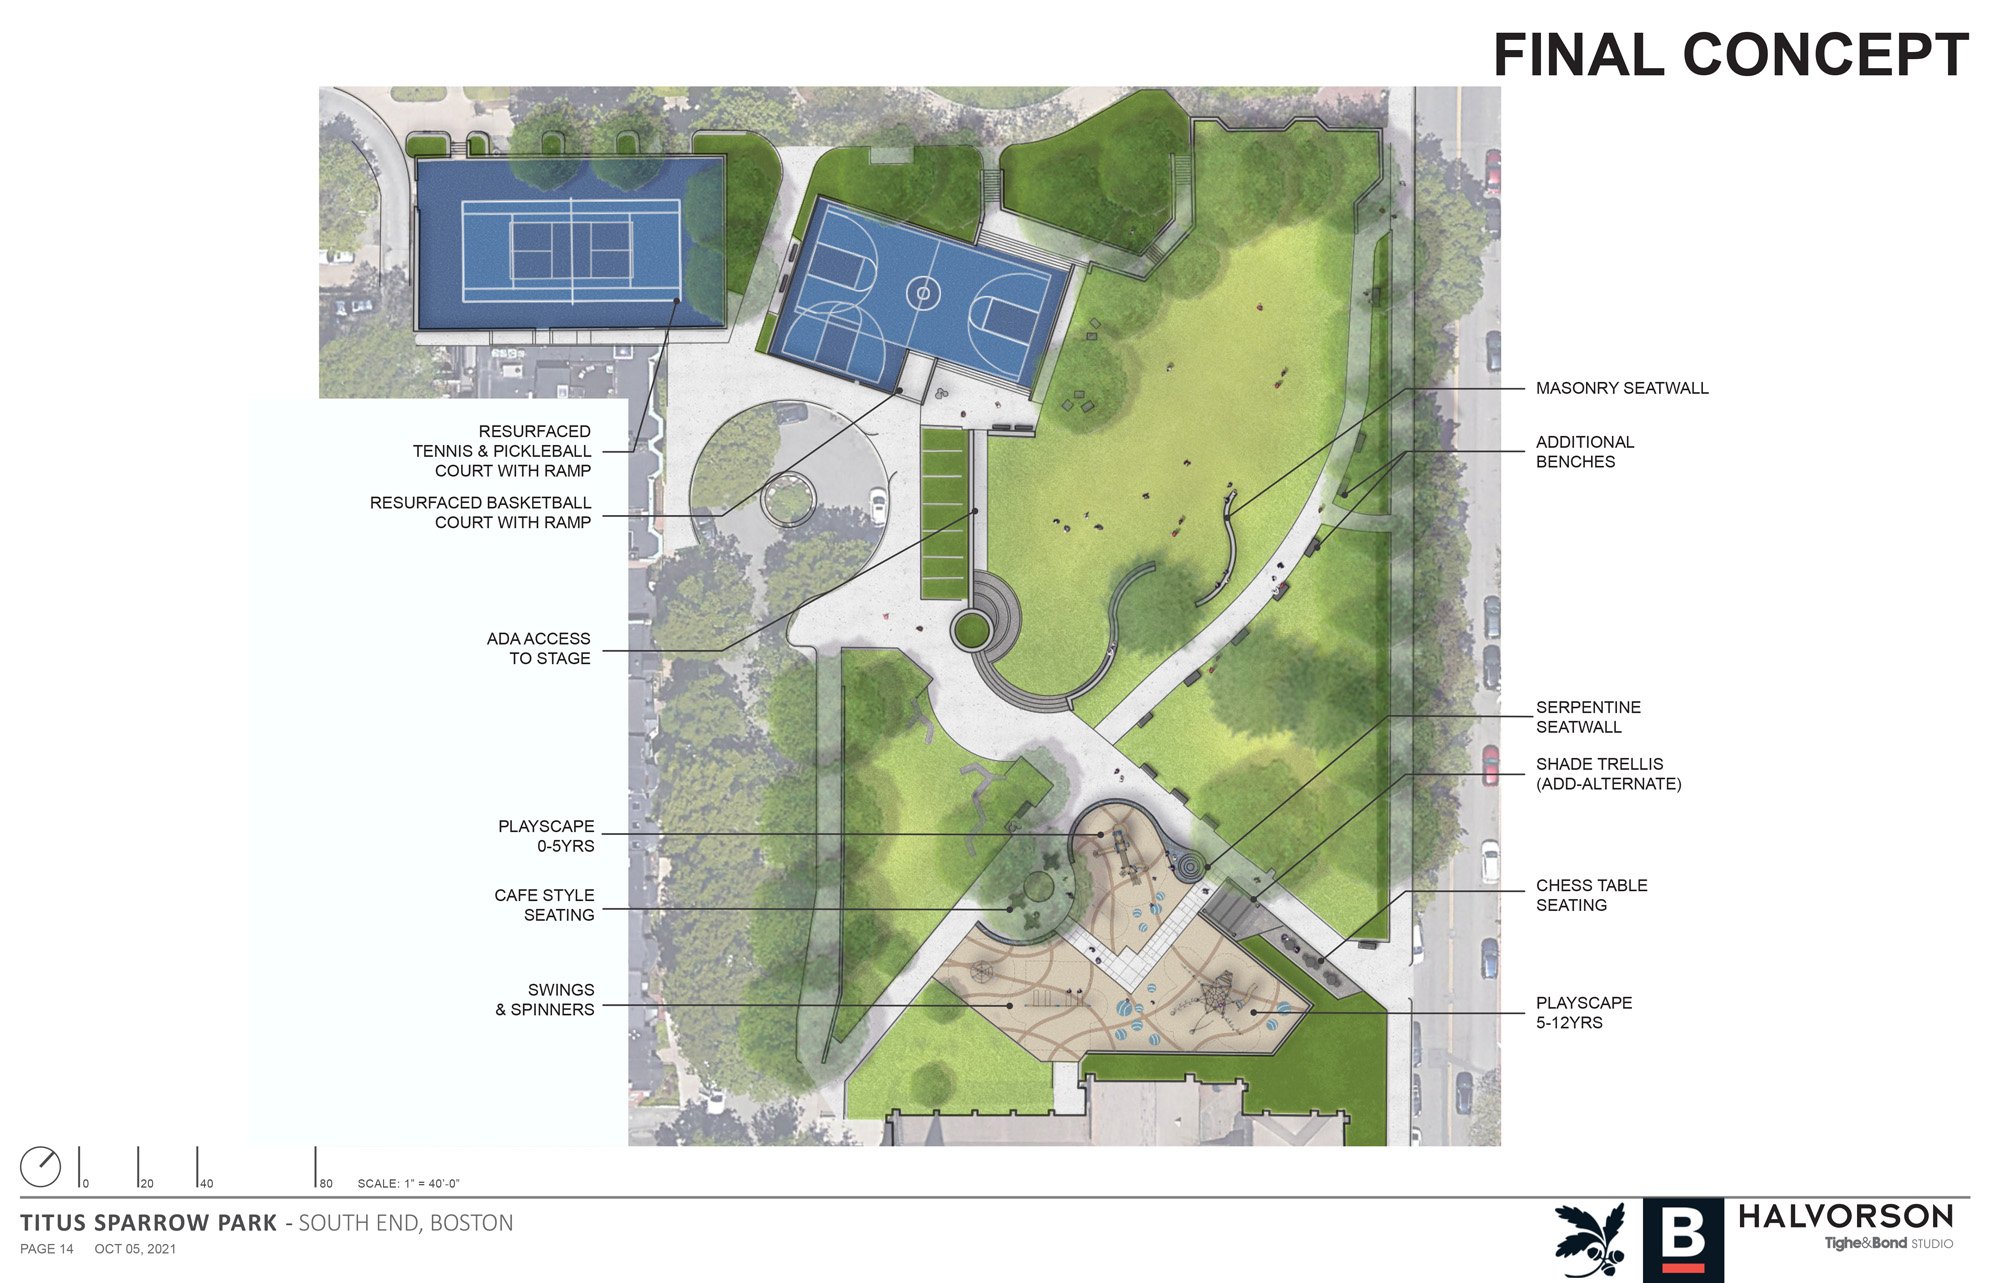  Titus Sparrow Park Site Plan 